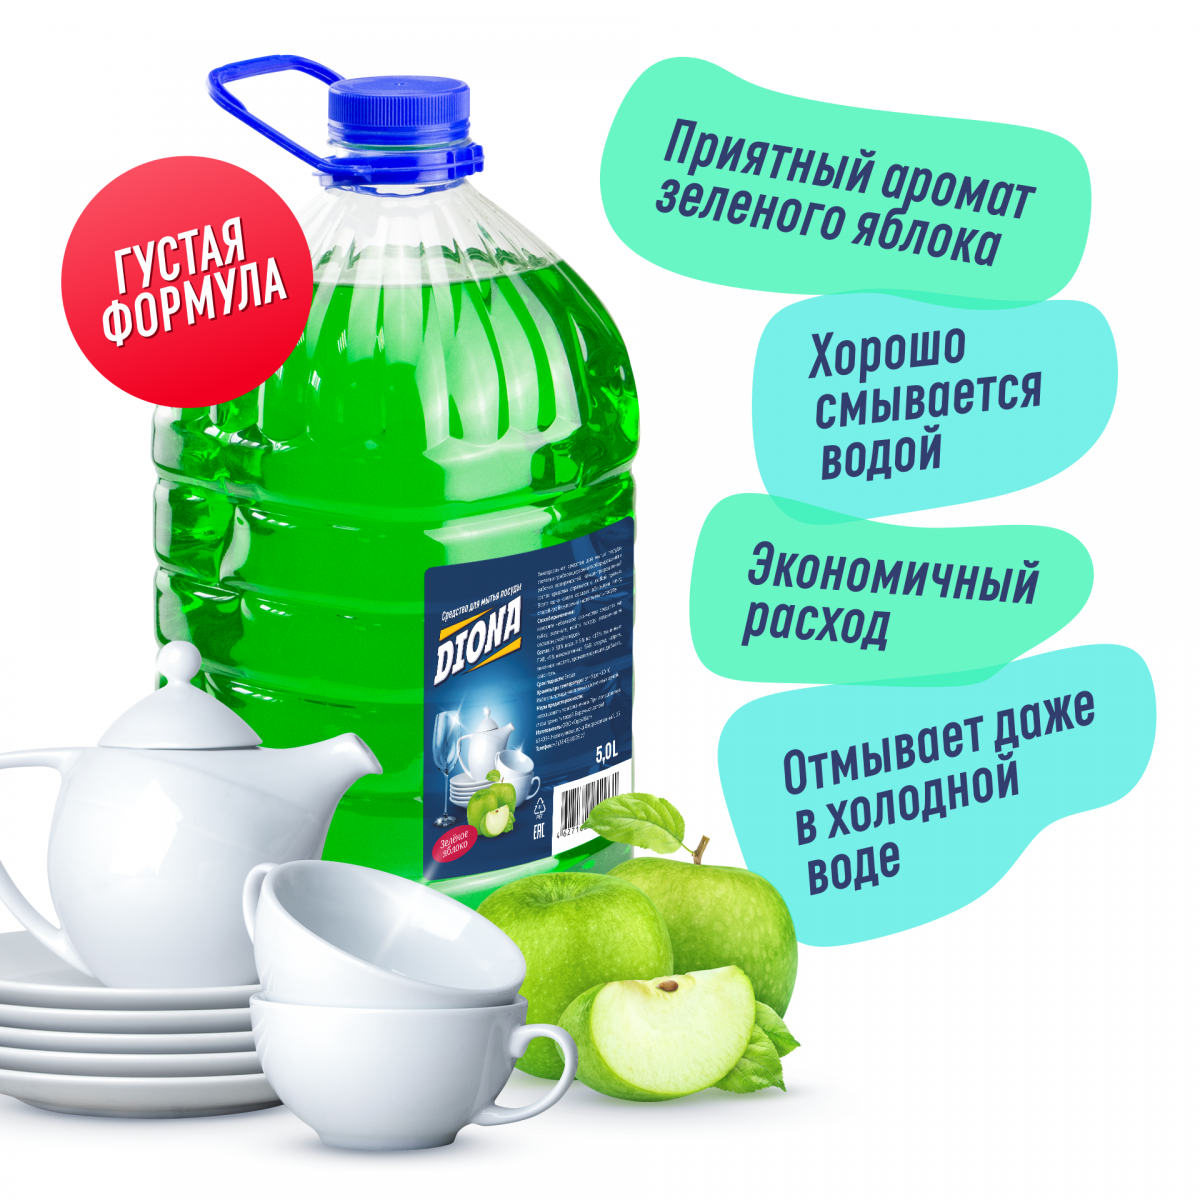 Средство для мытья посуды Зеленое яблоко Diona Magic ПЭТ 5л